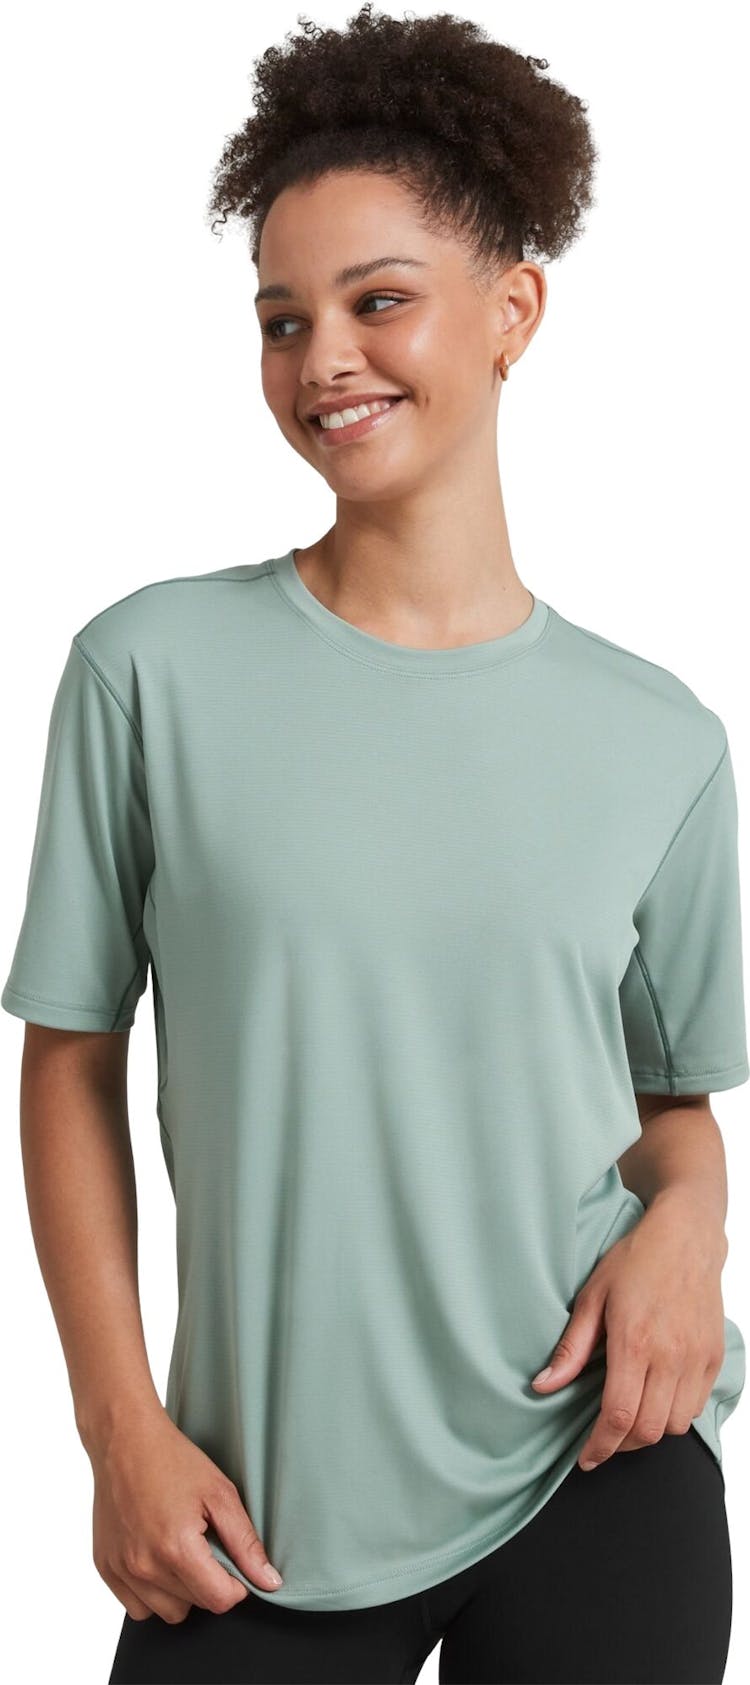 Numéro de l'image de la galerie de produits 1 pour le produit T-shirt à manches courtes SUN-Stopper - Femme